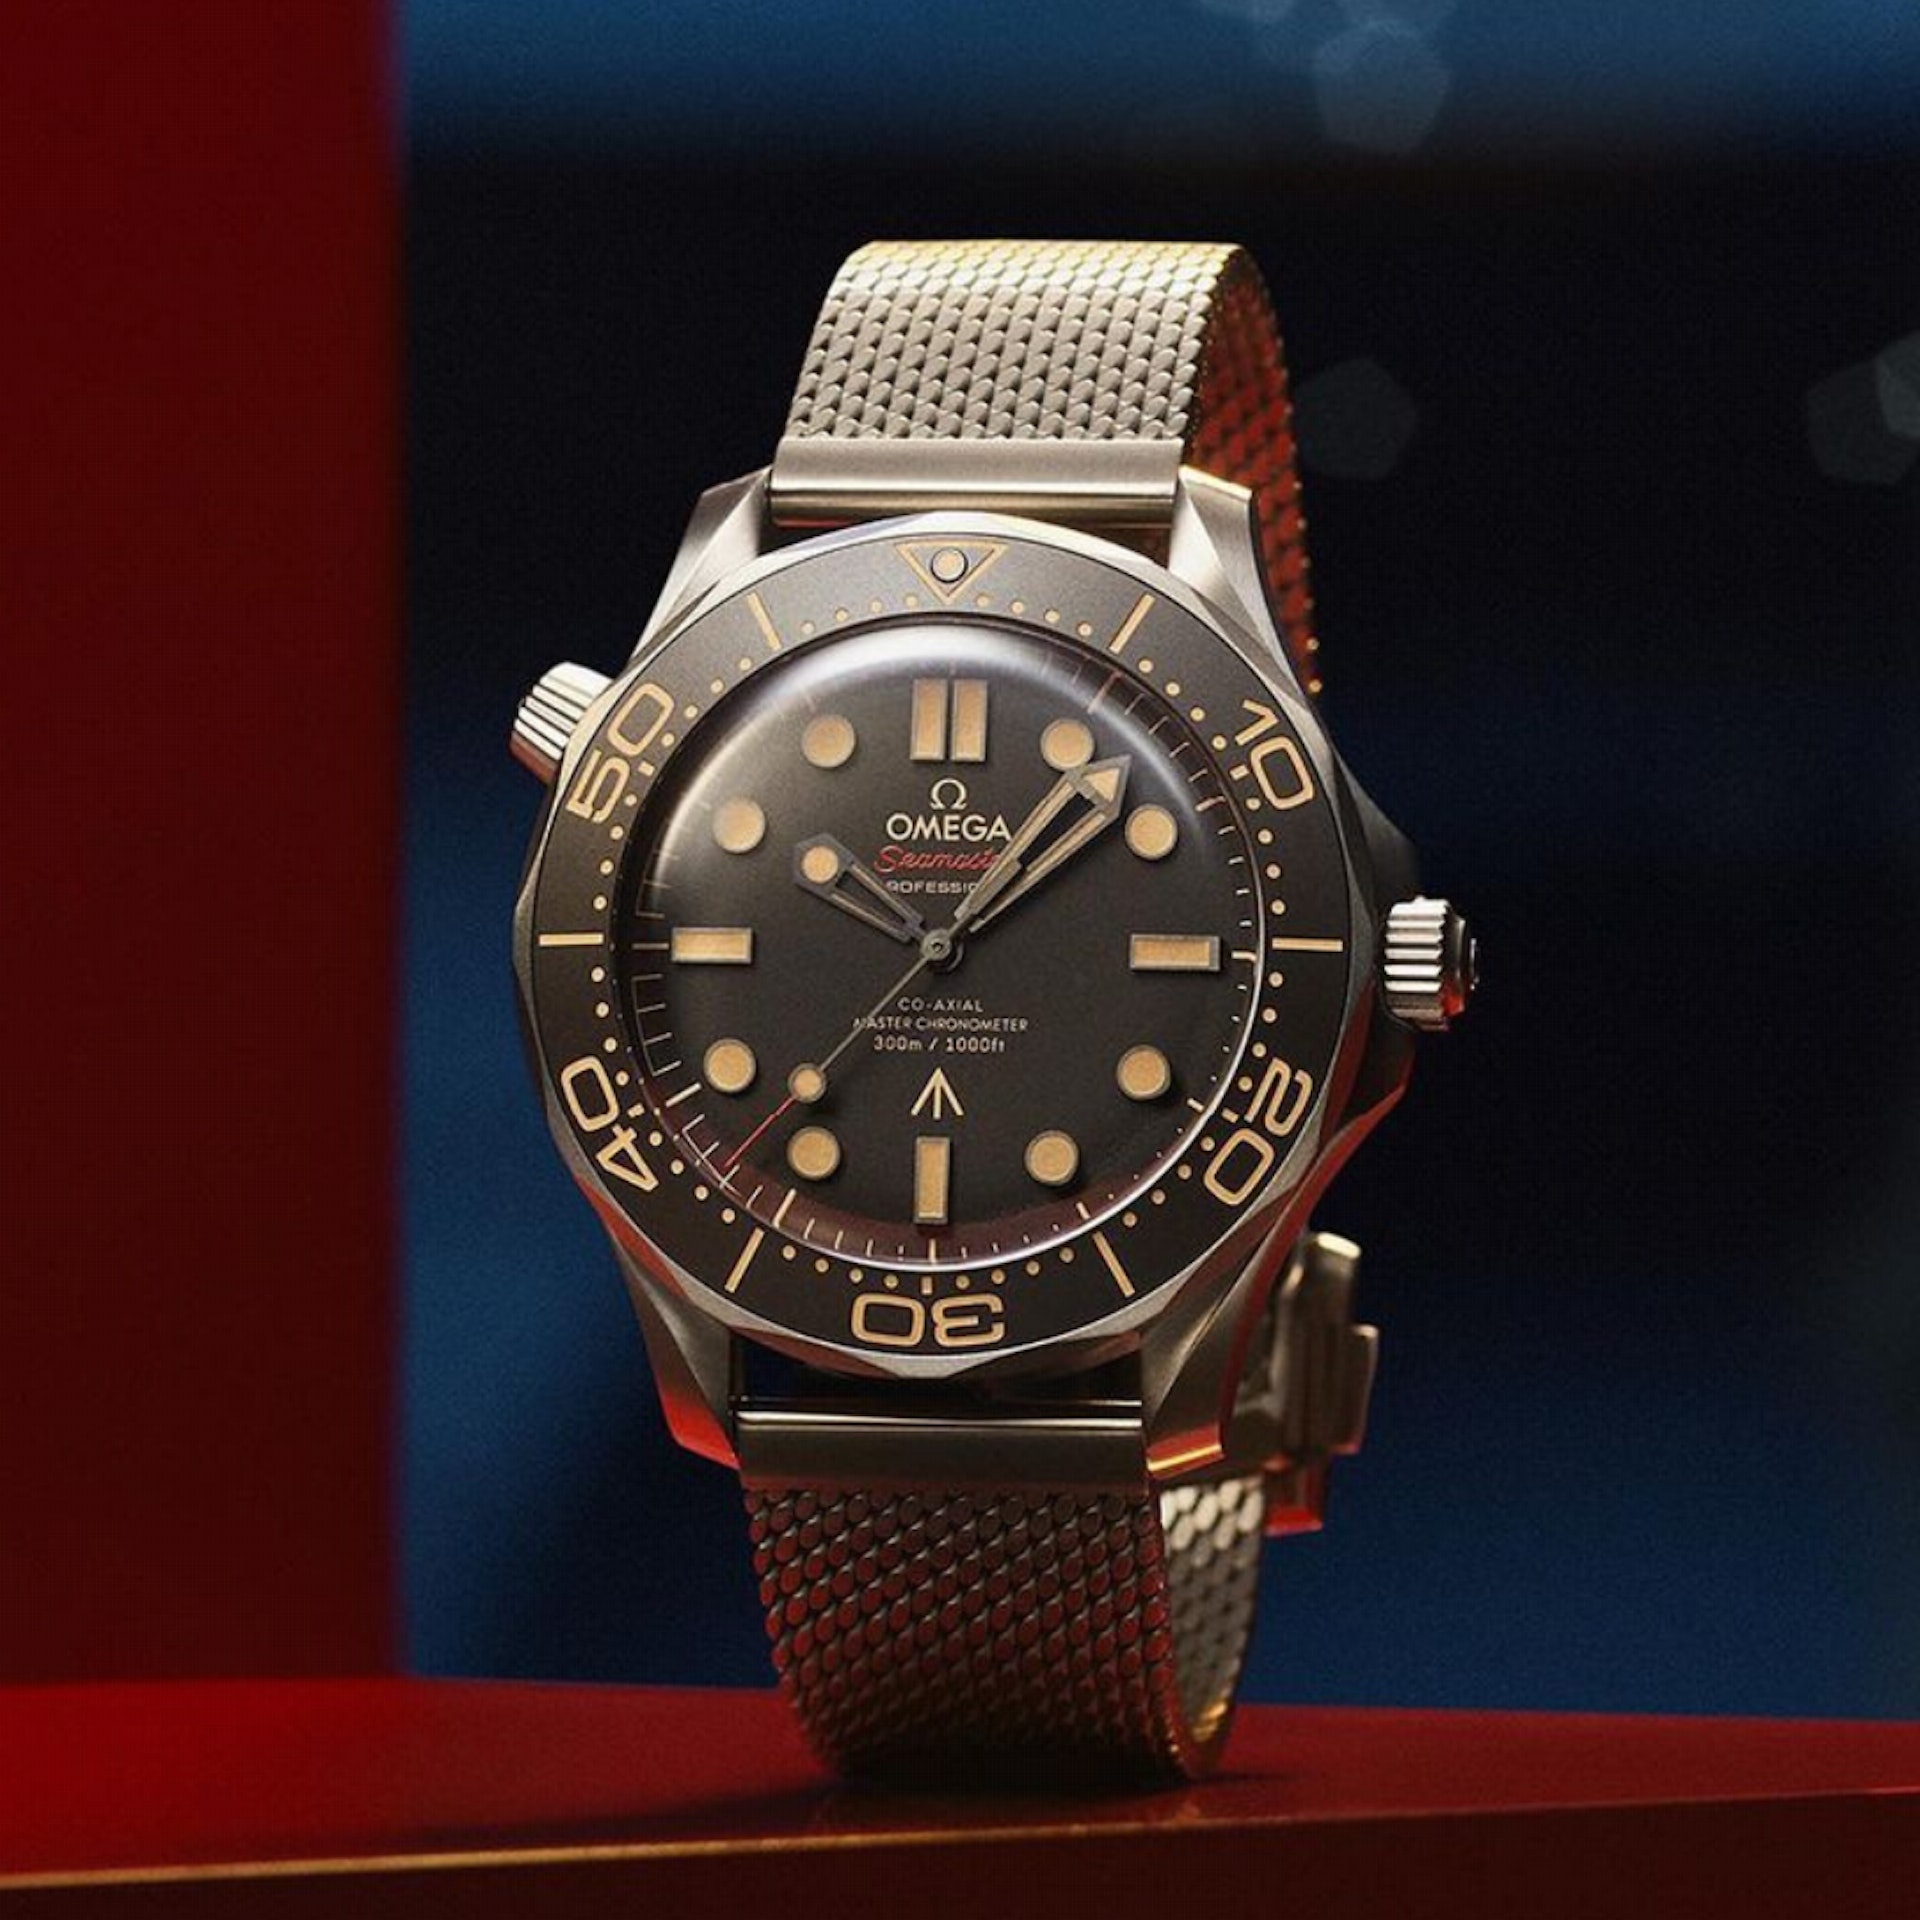 OMEGA海马手表007占士邦特别版行情创新低二级市场平过定价9折